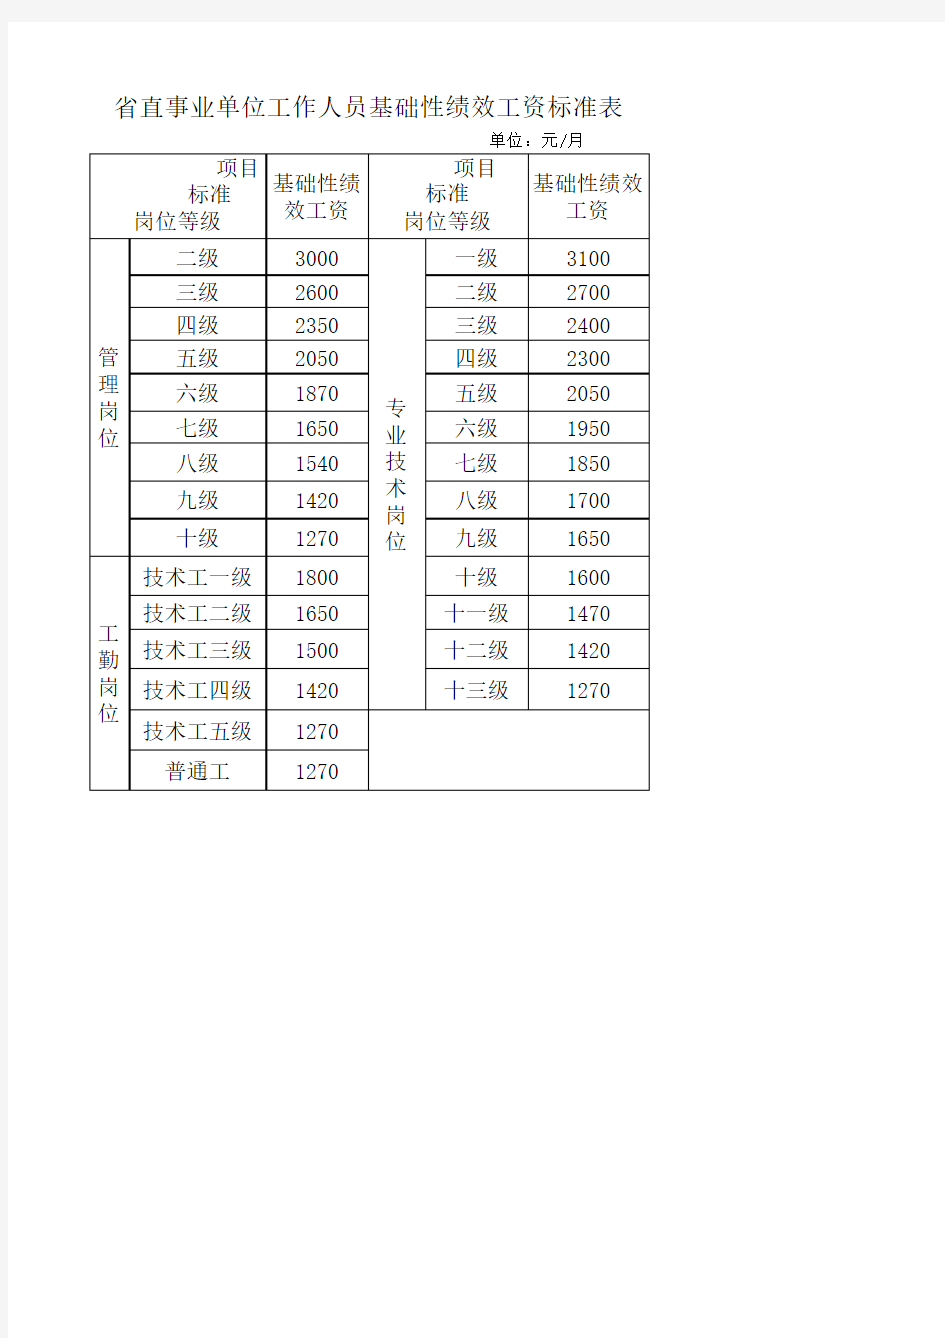 贵州省省直事业单位工作人员基础性绩效工资标准表